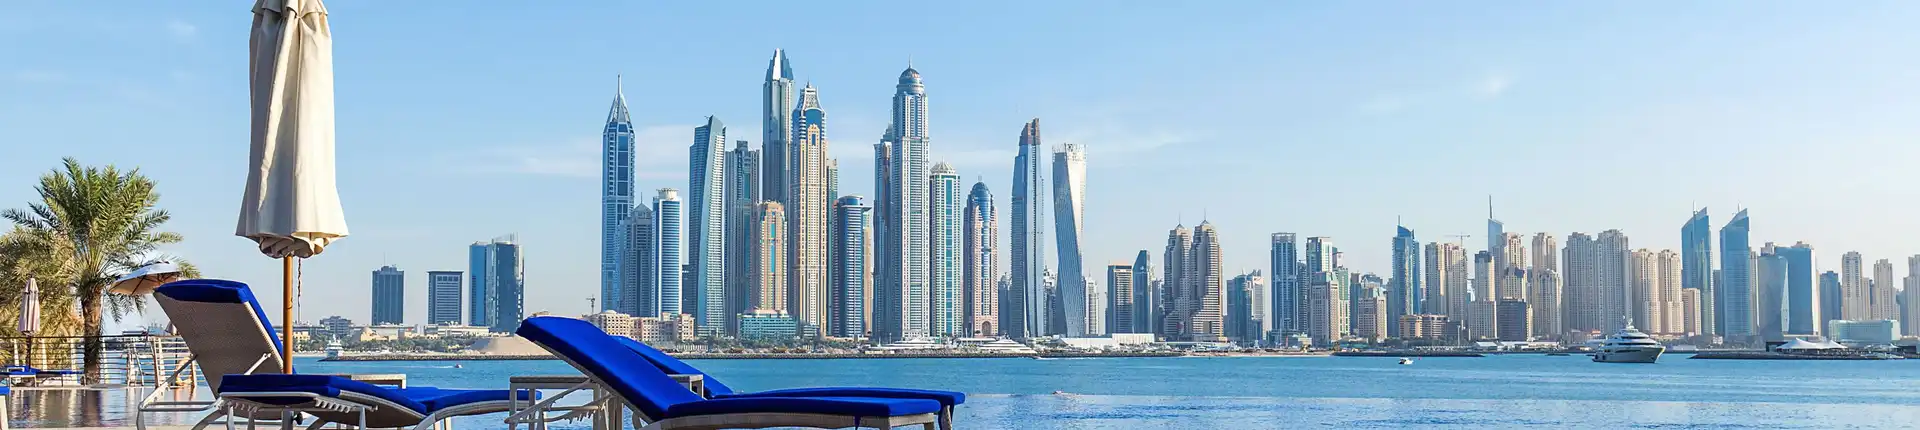 أفضل أماكن سياحية في دبي